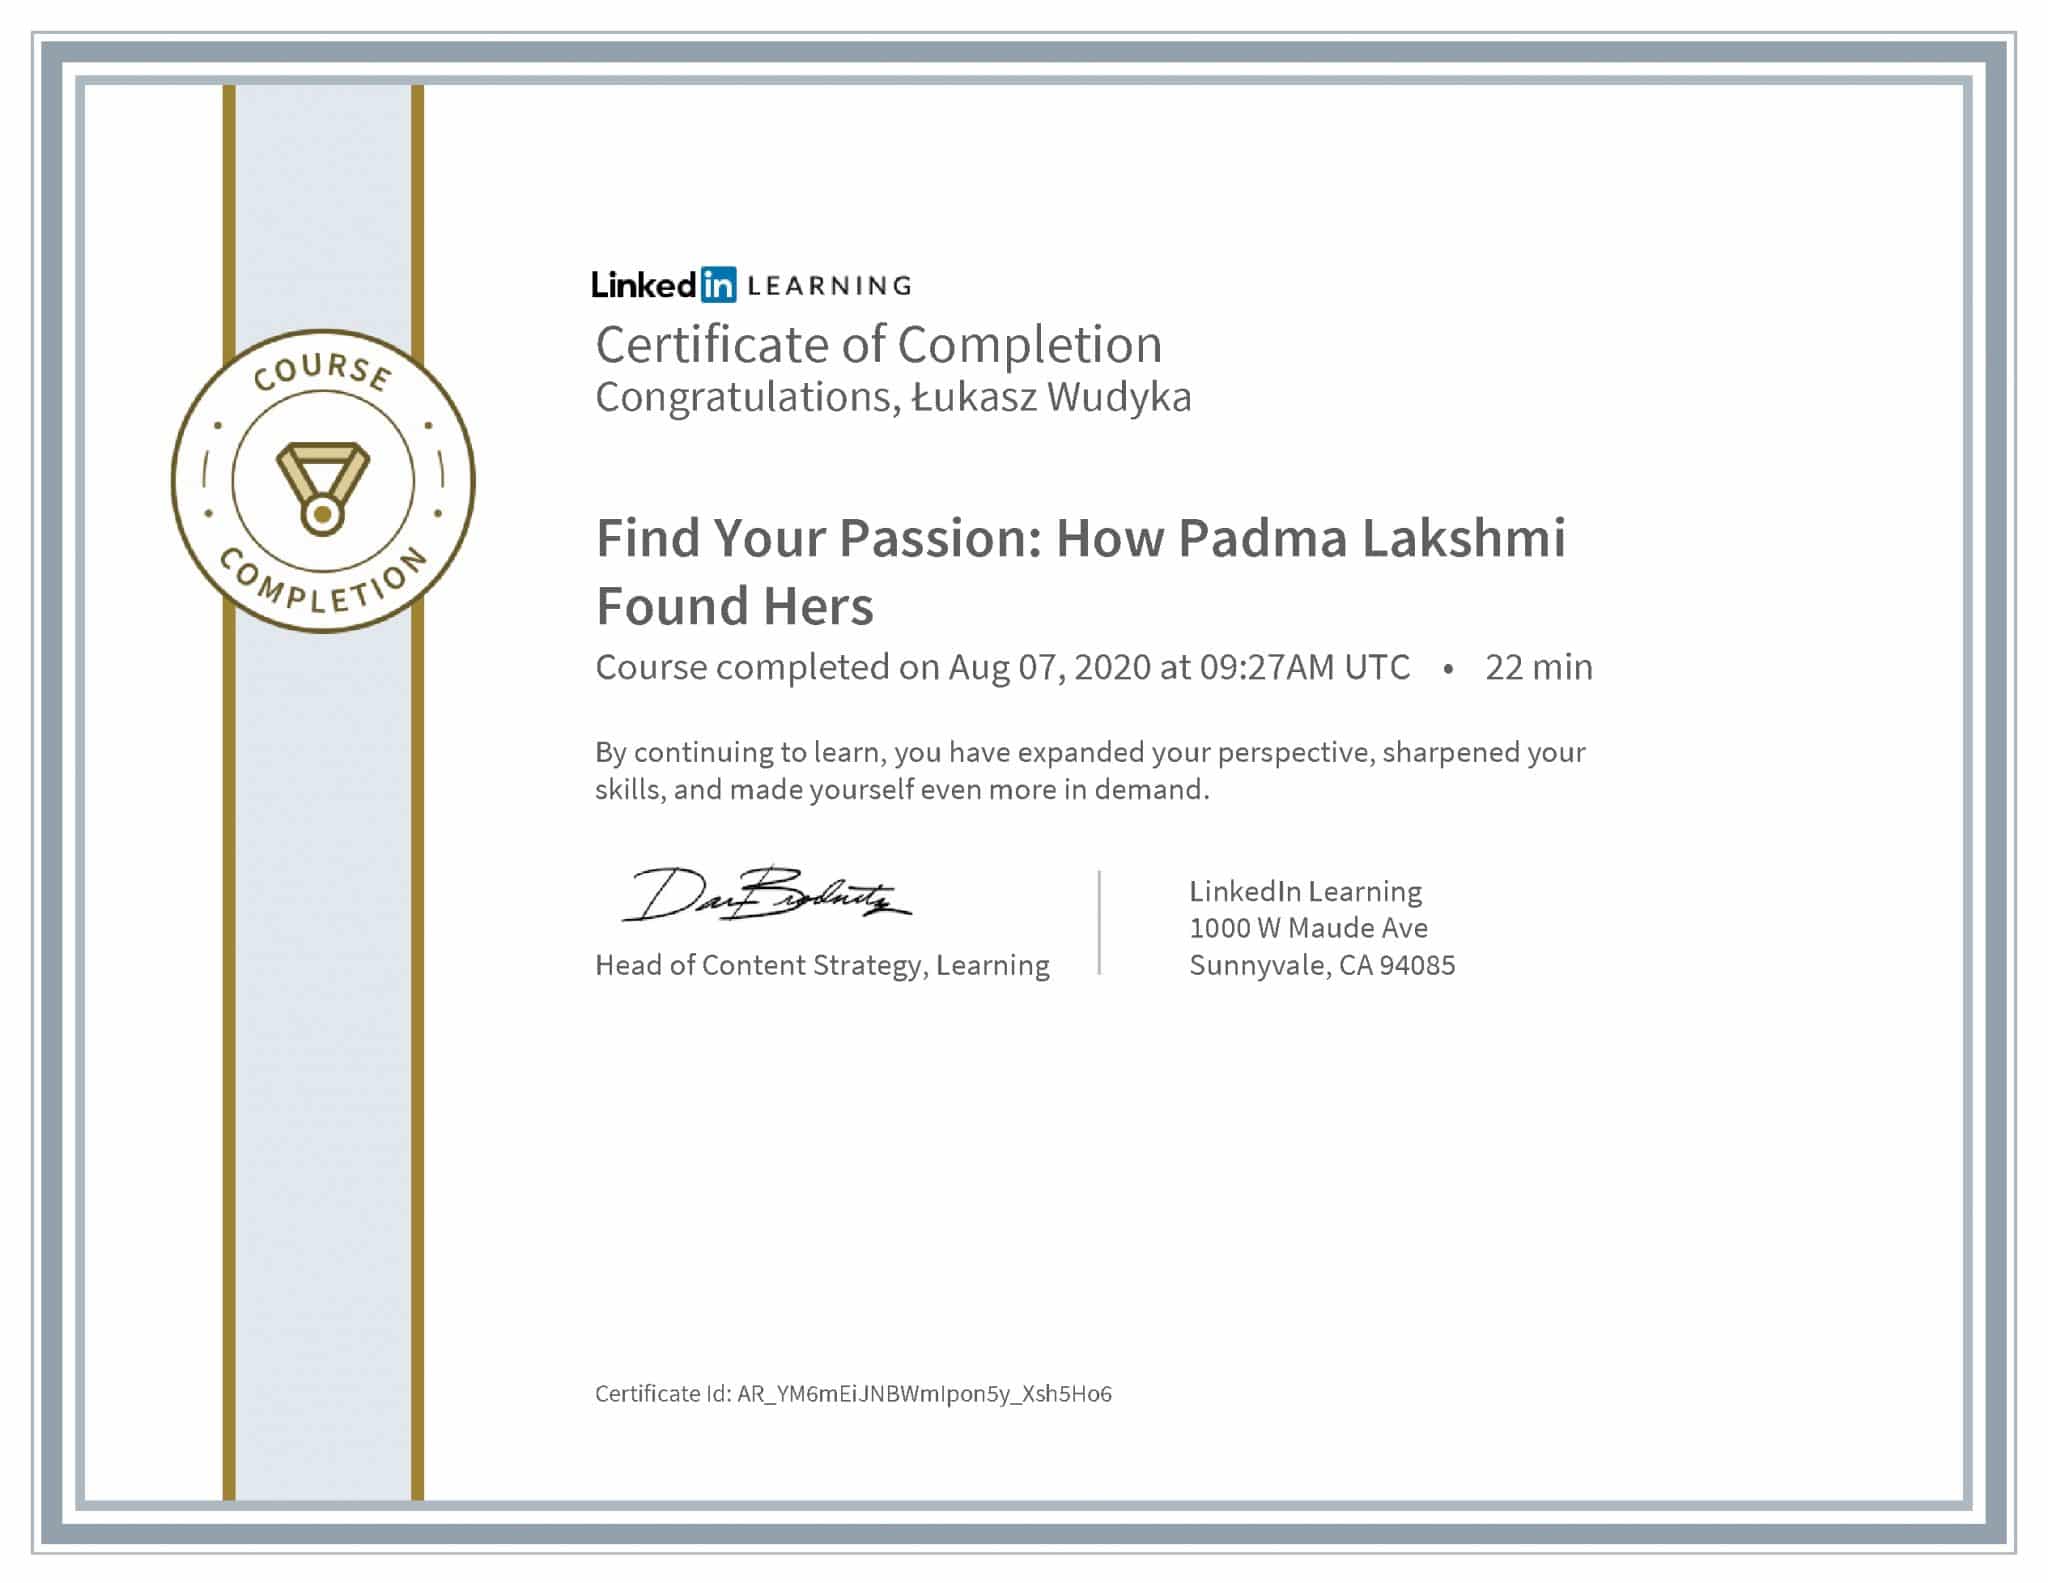 Łukasz Wudyka certyfikat LinkedIn Find Your Passion: How Padma Lakshmi Found Hers